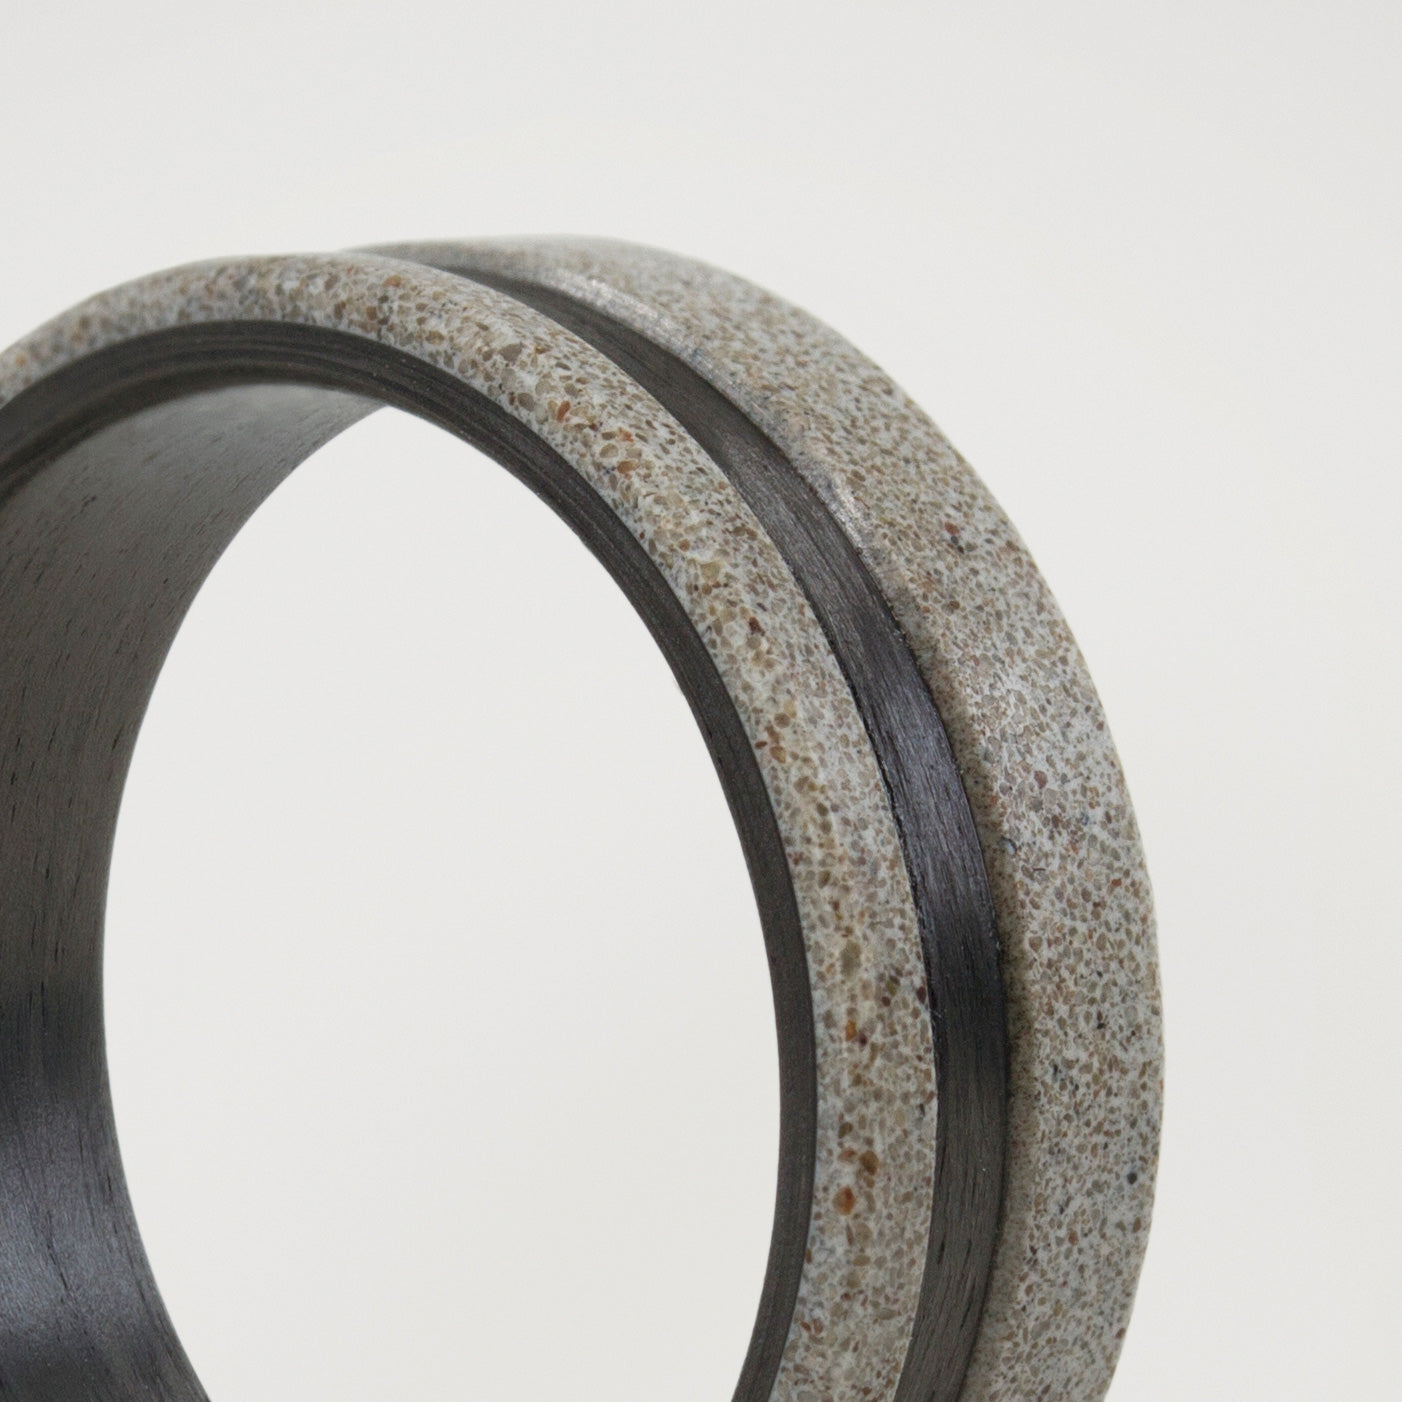 Gray concrete & Carbon fiber low relief ring